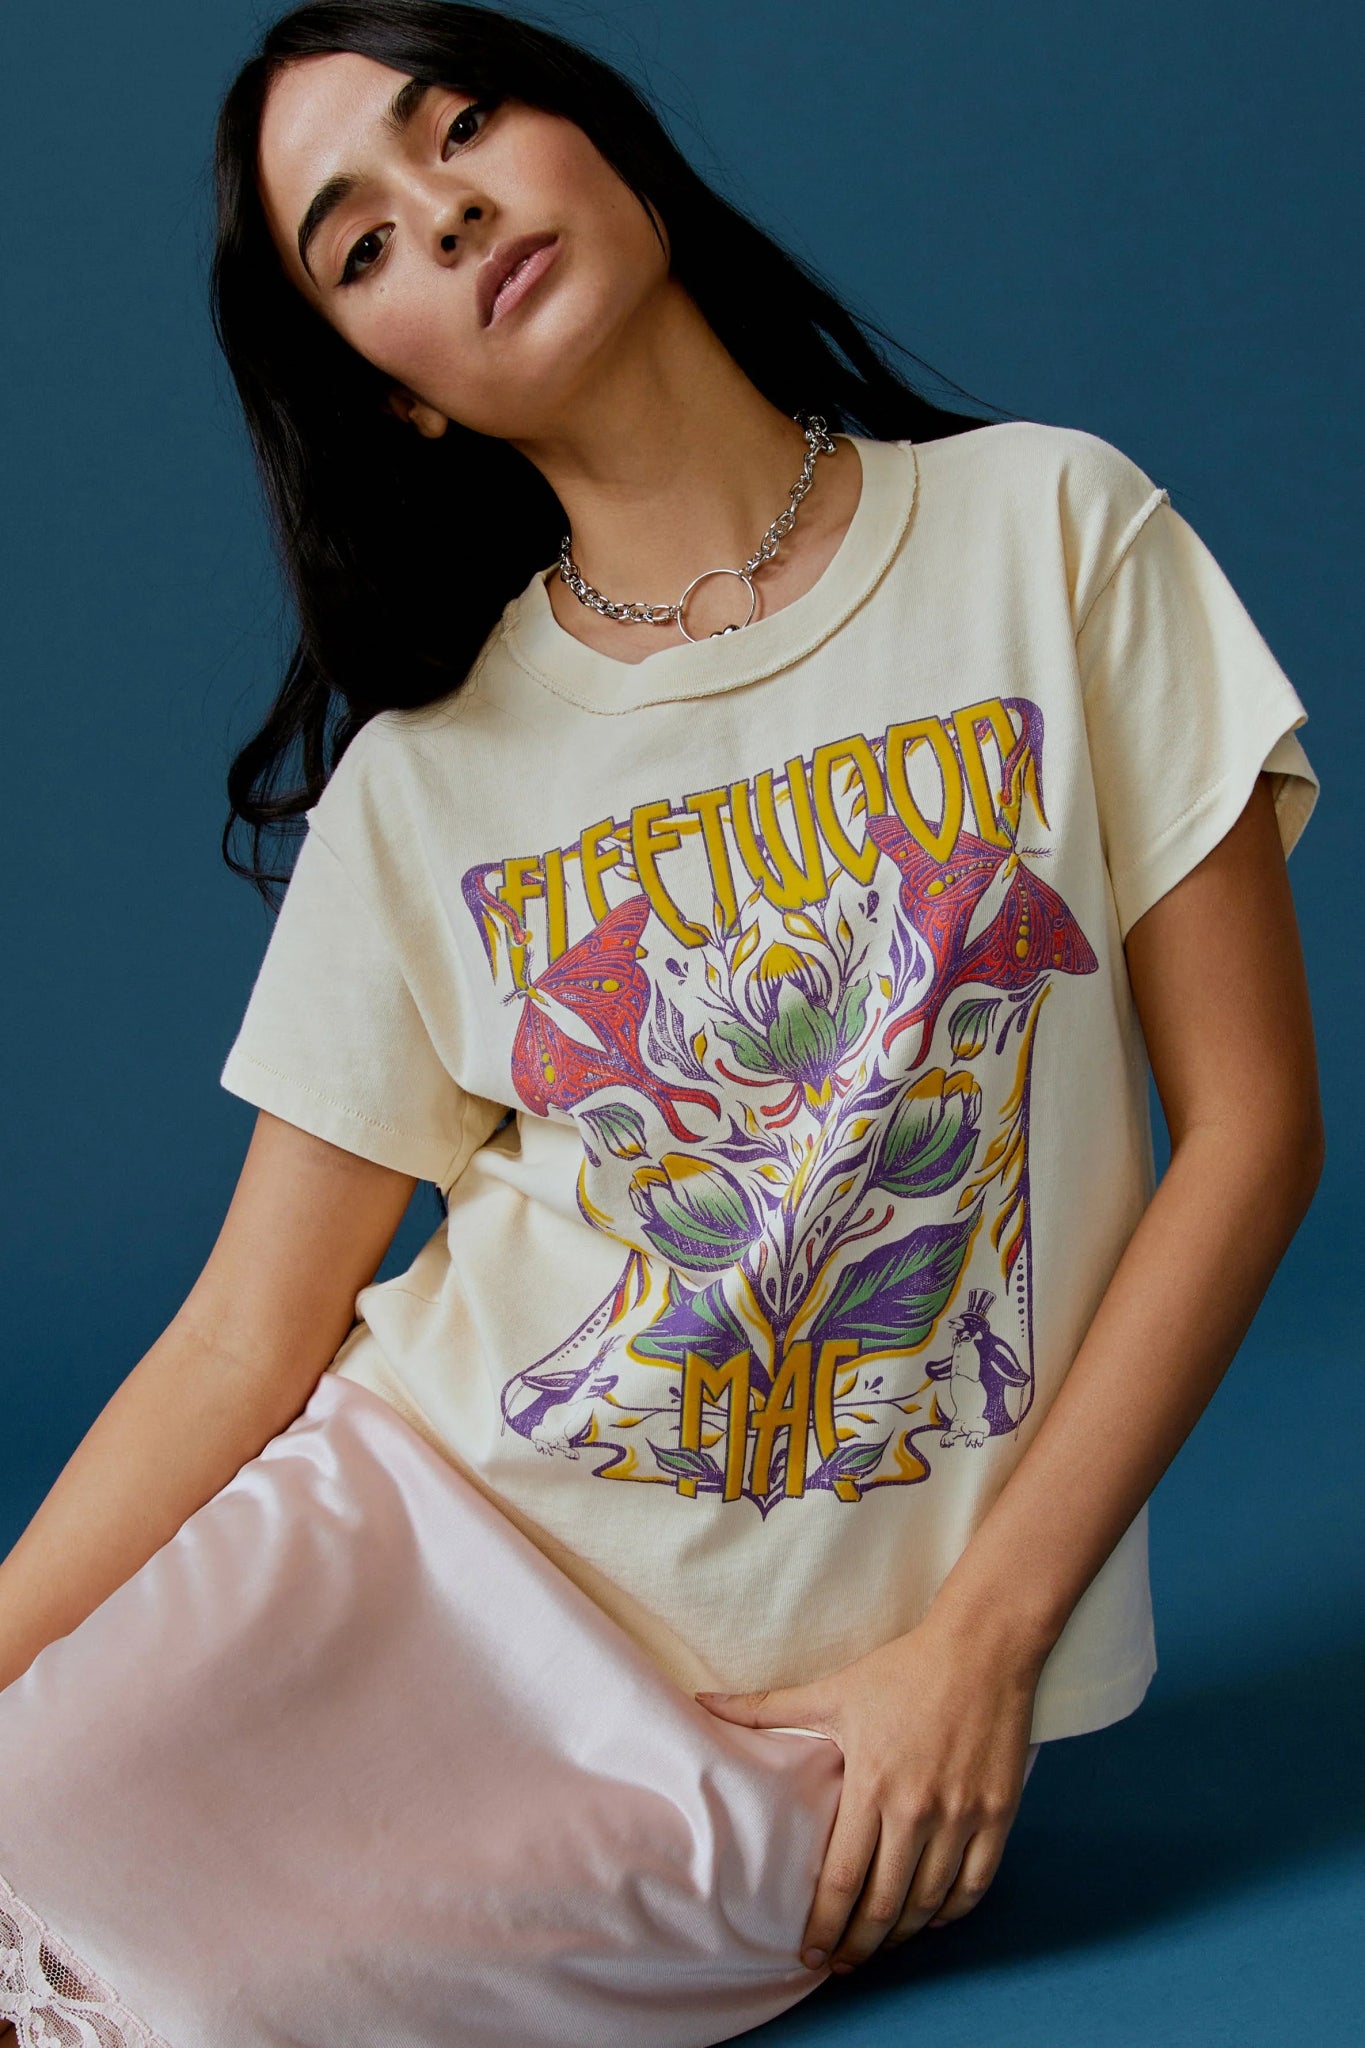 Daydreamer T-shirt | Fleetwood Mac | Butterflies | Girlfriend Tee - Women's Shirts & Tops - Blooming Daily